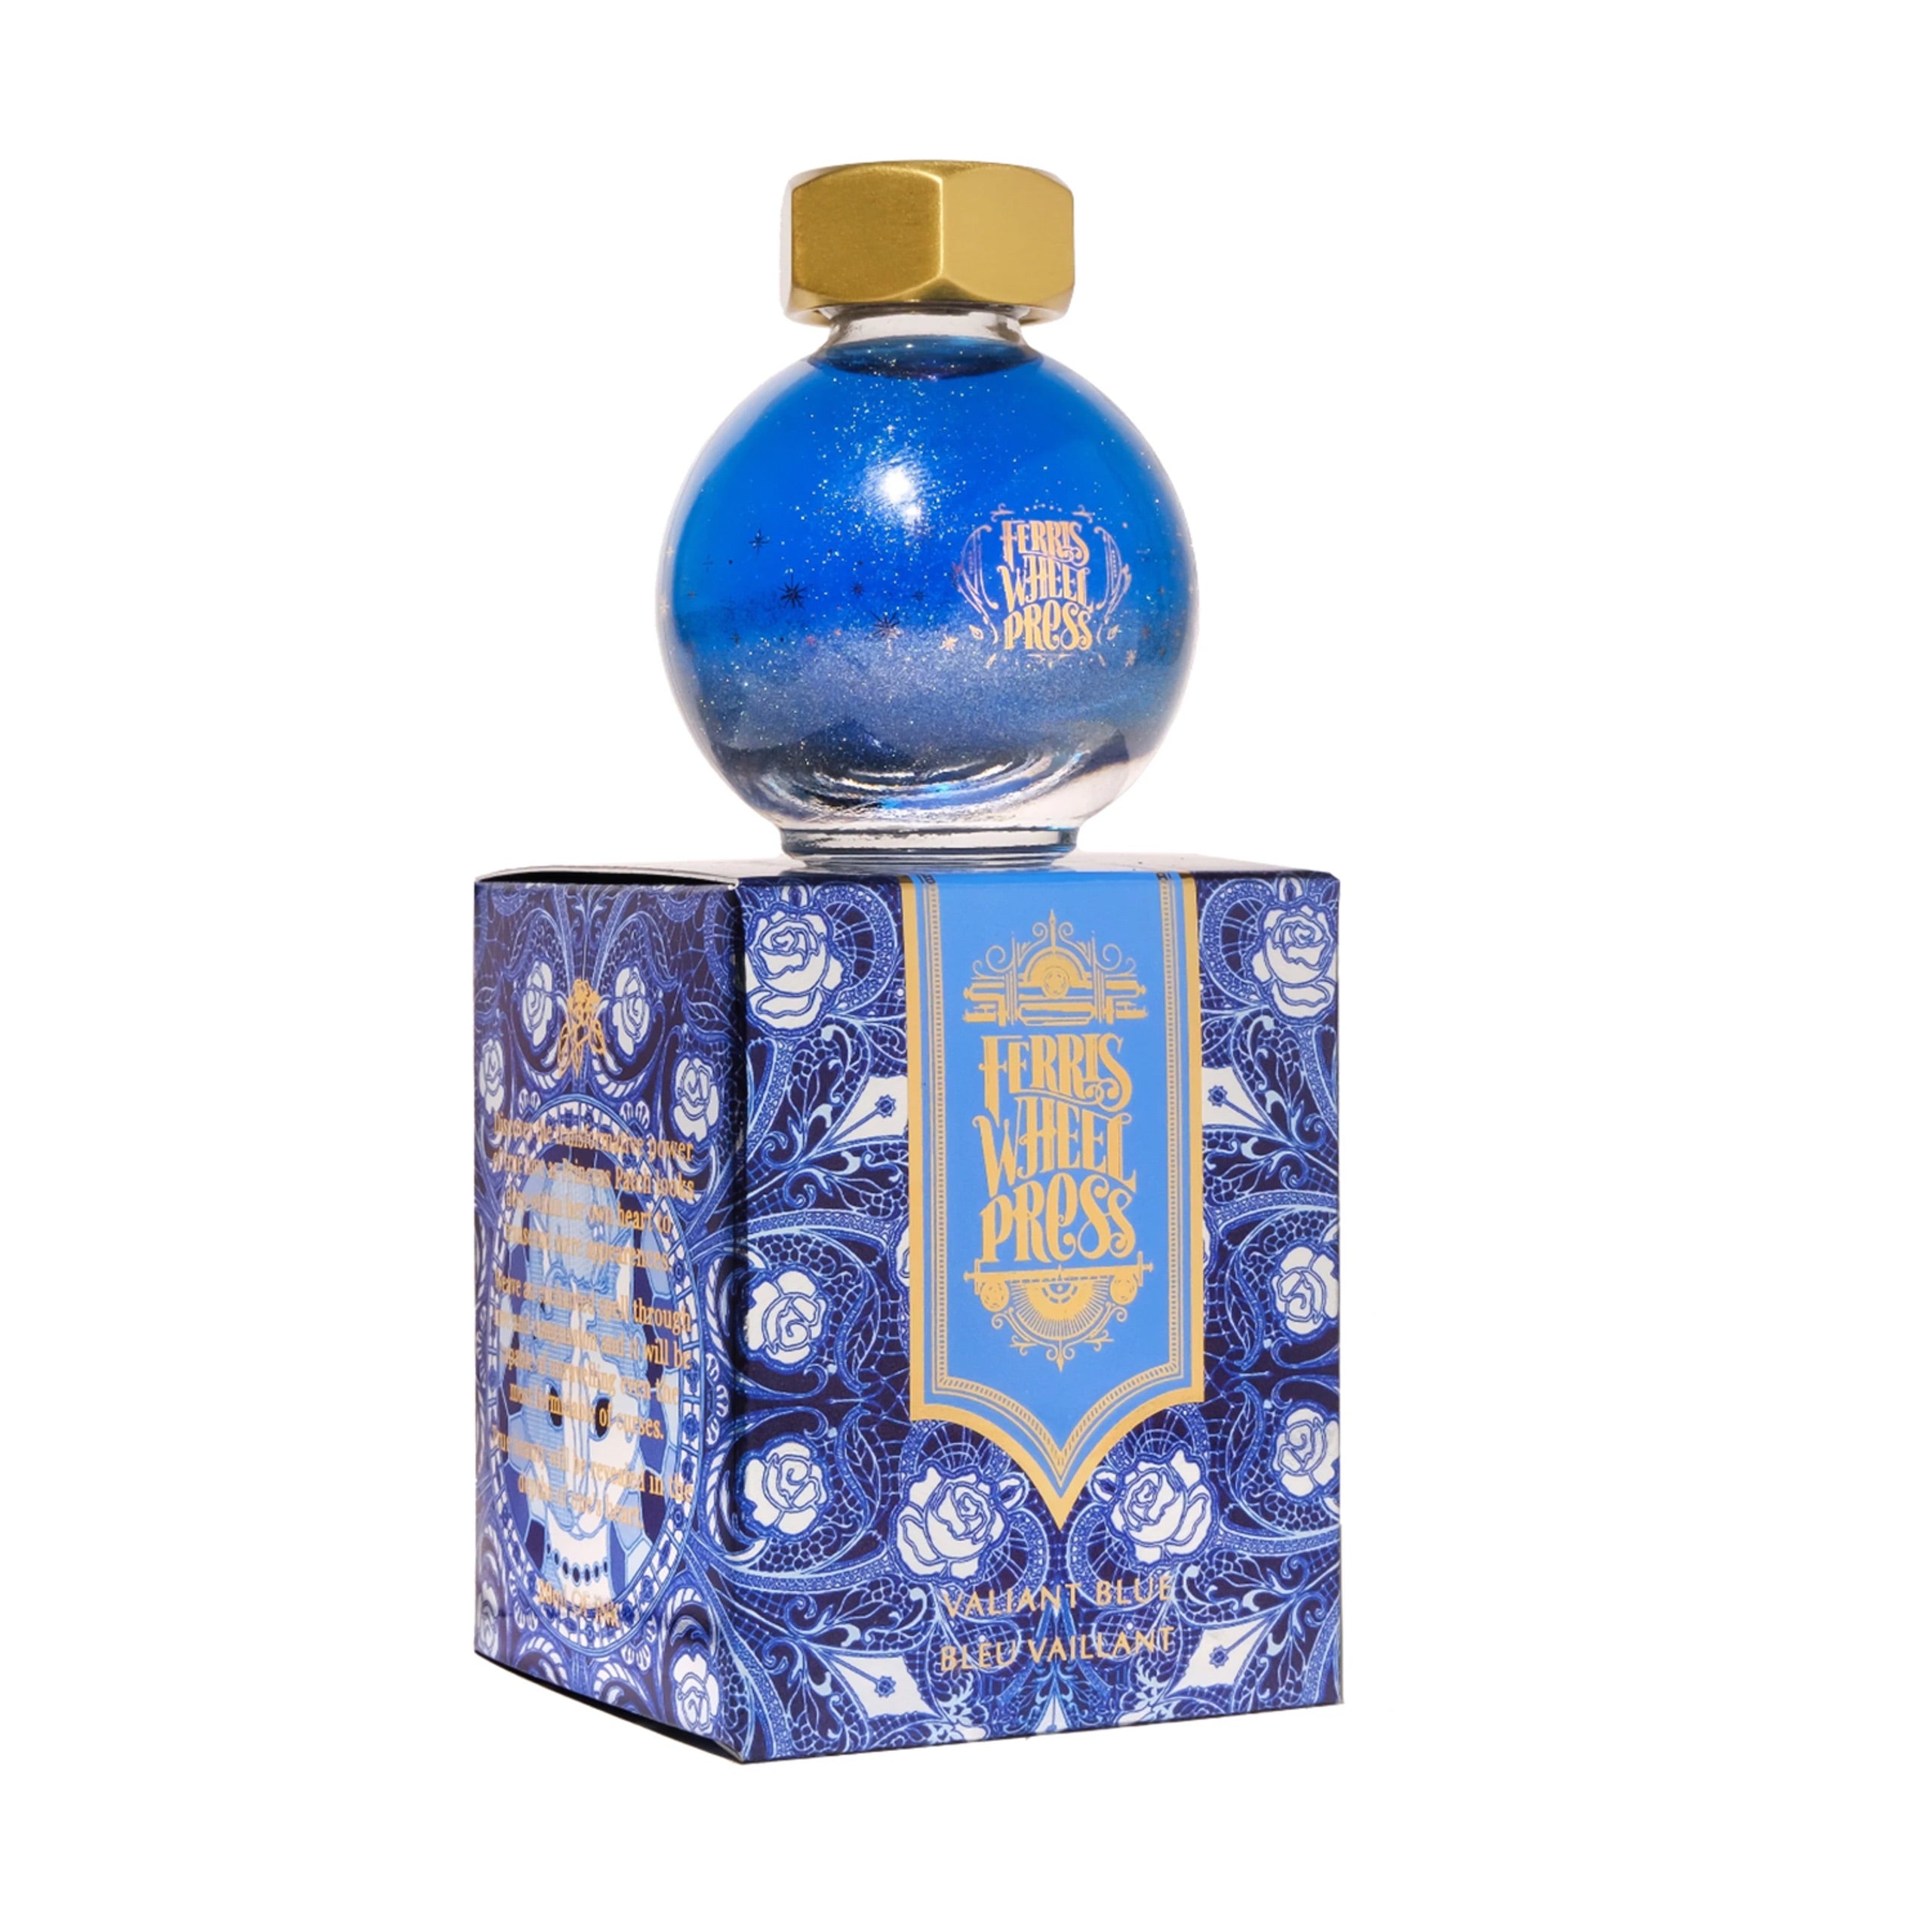 Tinta para pluma estilográfica Ferritales 20 ml - Azul Valiant